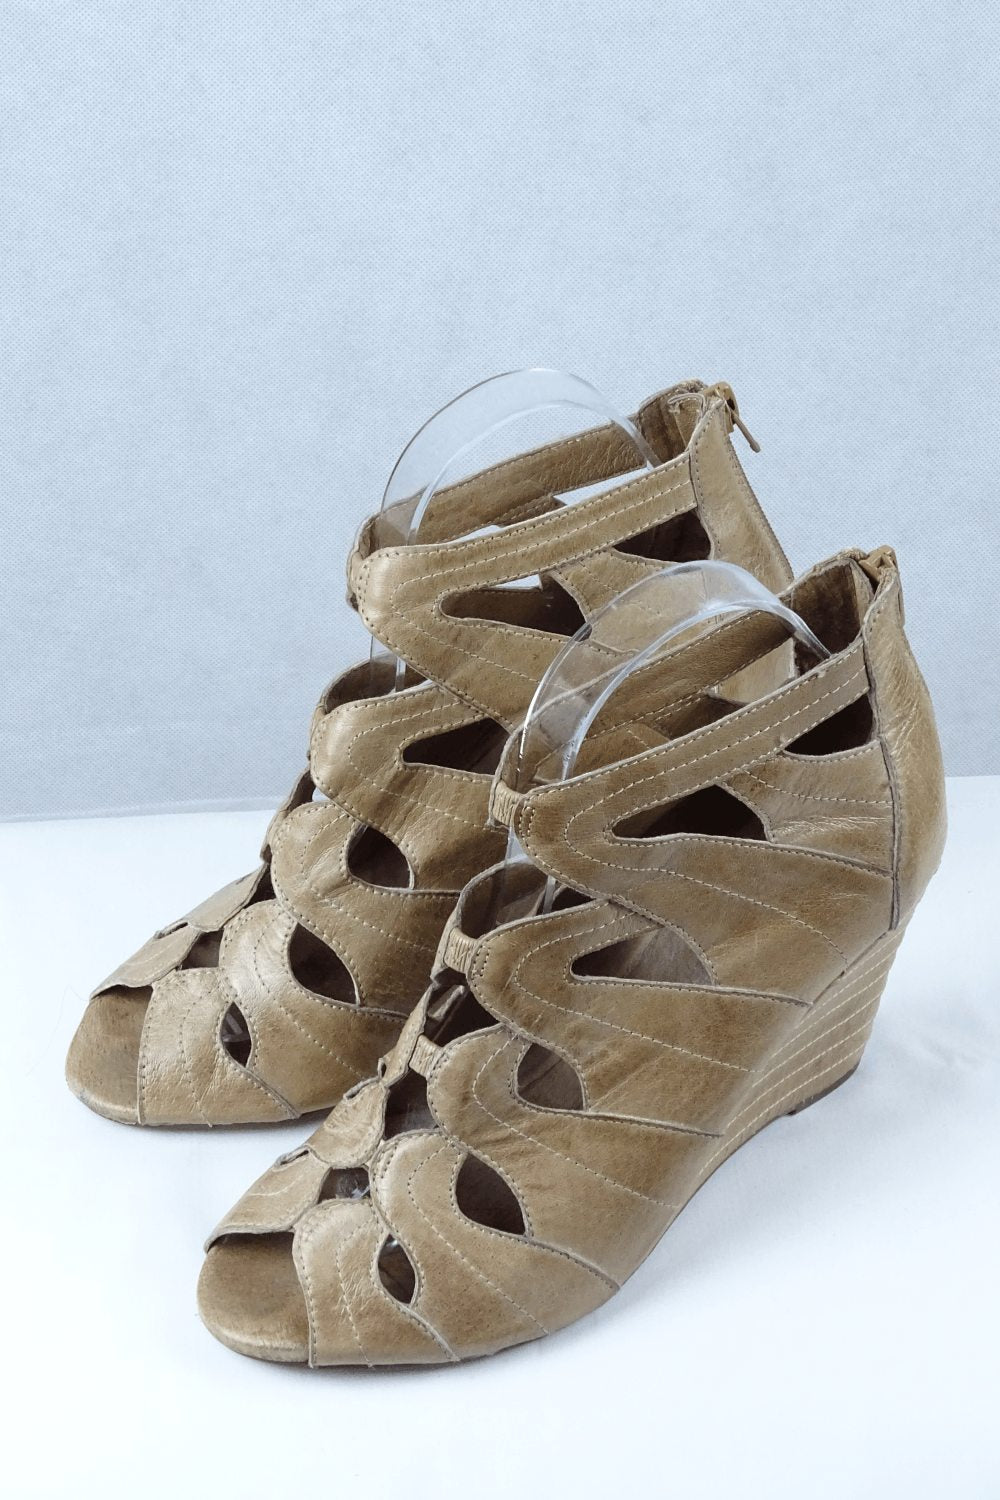 Miz Mooz Brown Leather Wedge Sandals 8